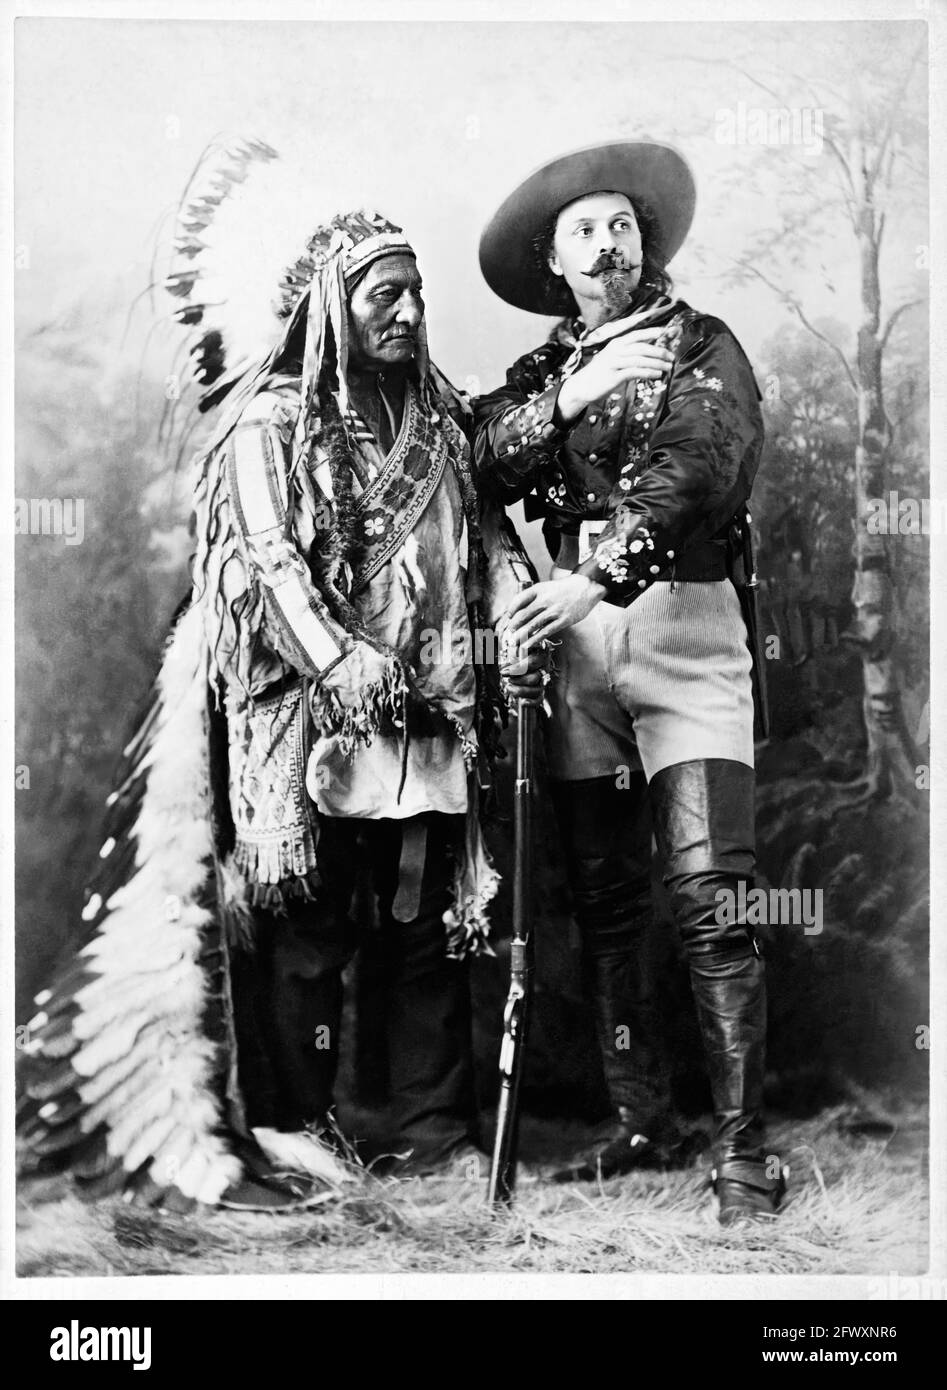 1880 Ca, Montreal, KANADA: Der gefeierte Colonel William Frederick CODY, bekannt als BUFFALO BILL (1846 - 1917) mit Chef SITZENDEN STIER (1831 - 1890) von Sioux Hunkpapa zur Zeit der WILDEN WEST-SHOW. Foto von W.M. Notman & Son, Montreal. - Epopea del Selvaggio WEST - Cowboy - Cow-boy - Circus - uomo anziano vecchio - älterer Mann - Baffi - barba - Bart - Schnurrbart - Circo - Hut - cappello - piume - Federn - Indianer Amerikas - Indiani d'America - Indianer - Nativi americani - Pellerossa - Rothäute - fucile - Gewehr - Waffe - arma - Stiefel - Stivali --- Archivio GBB Stockfoto